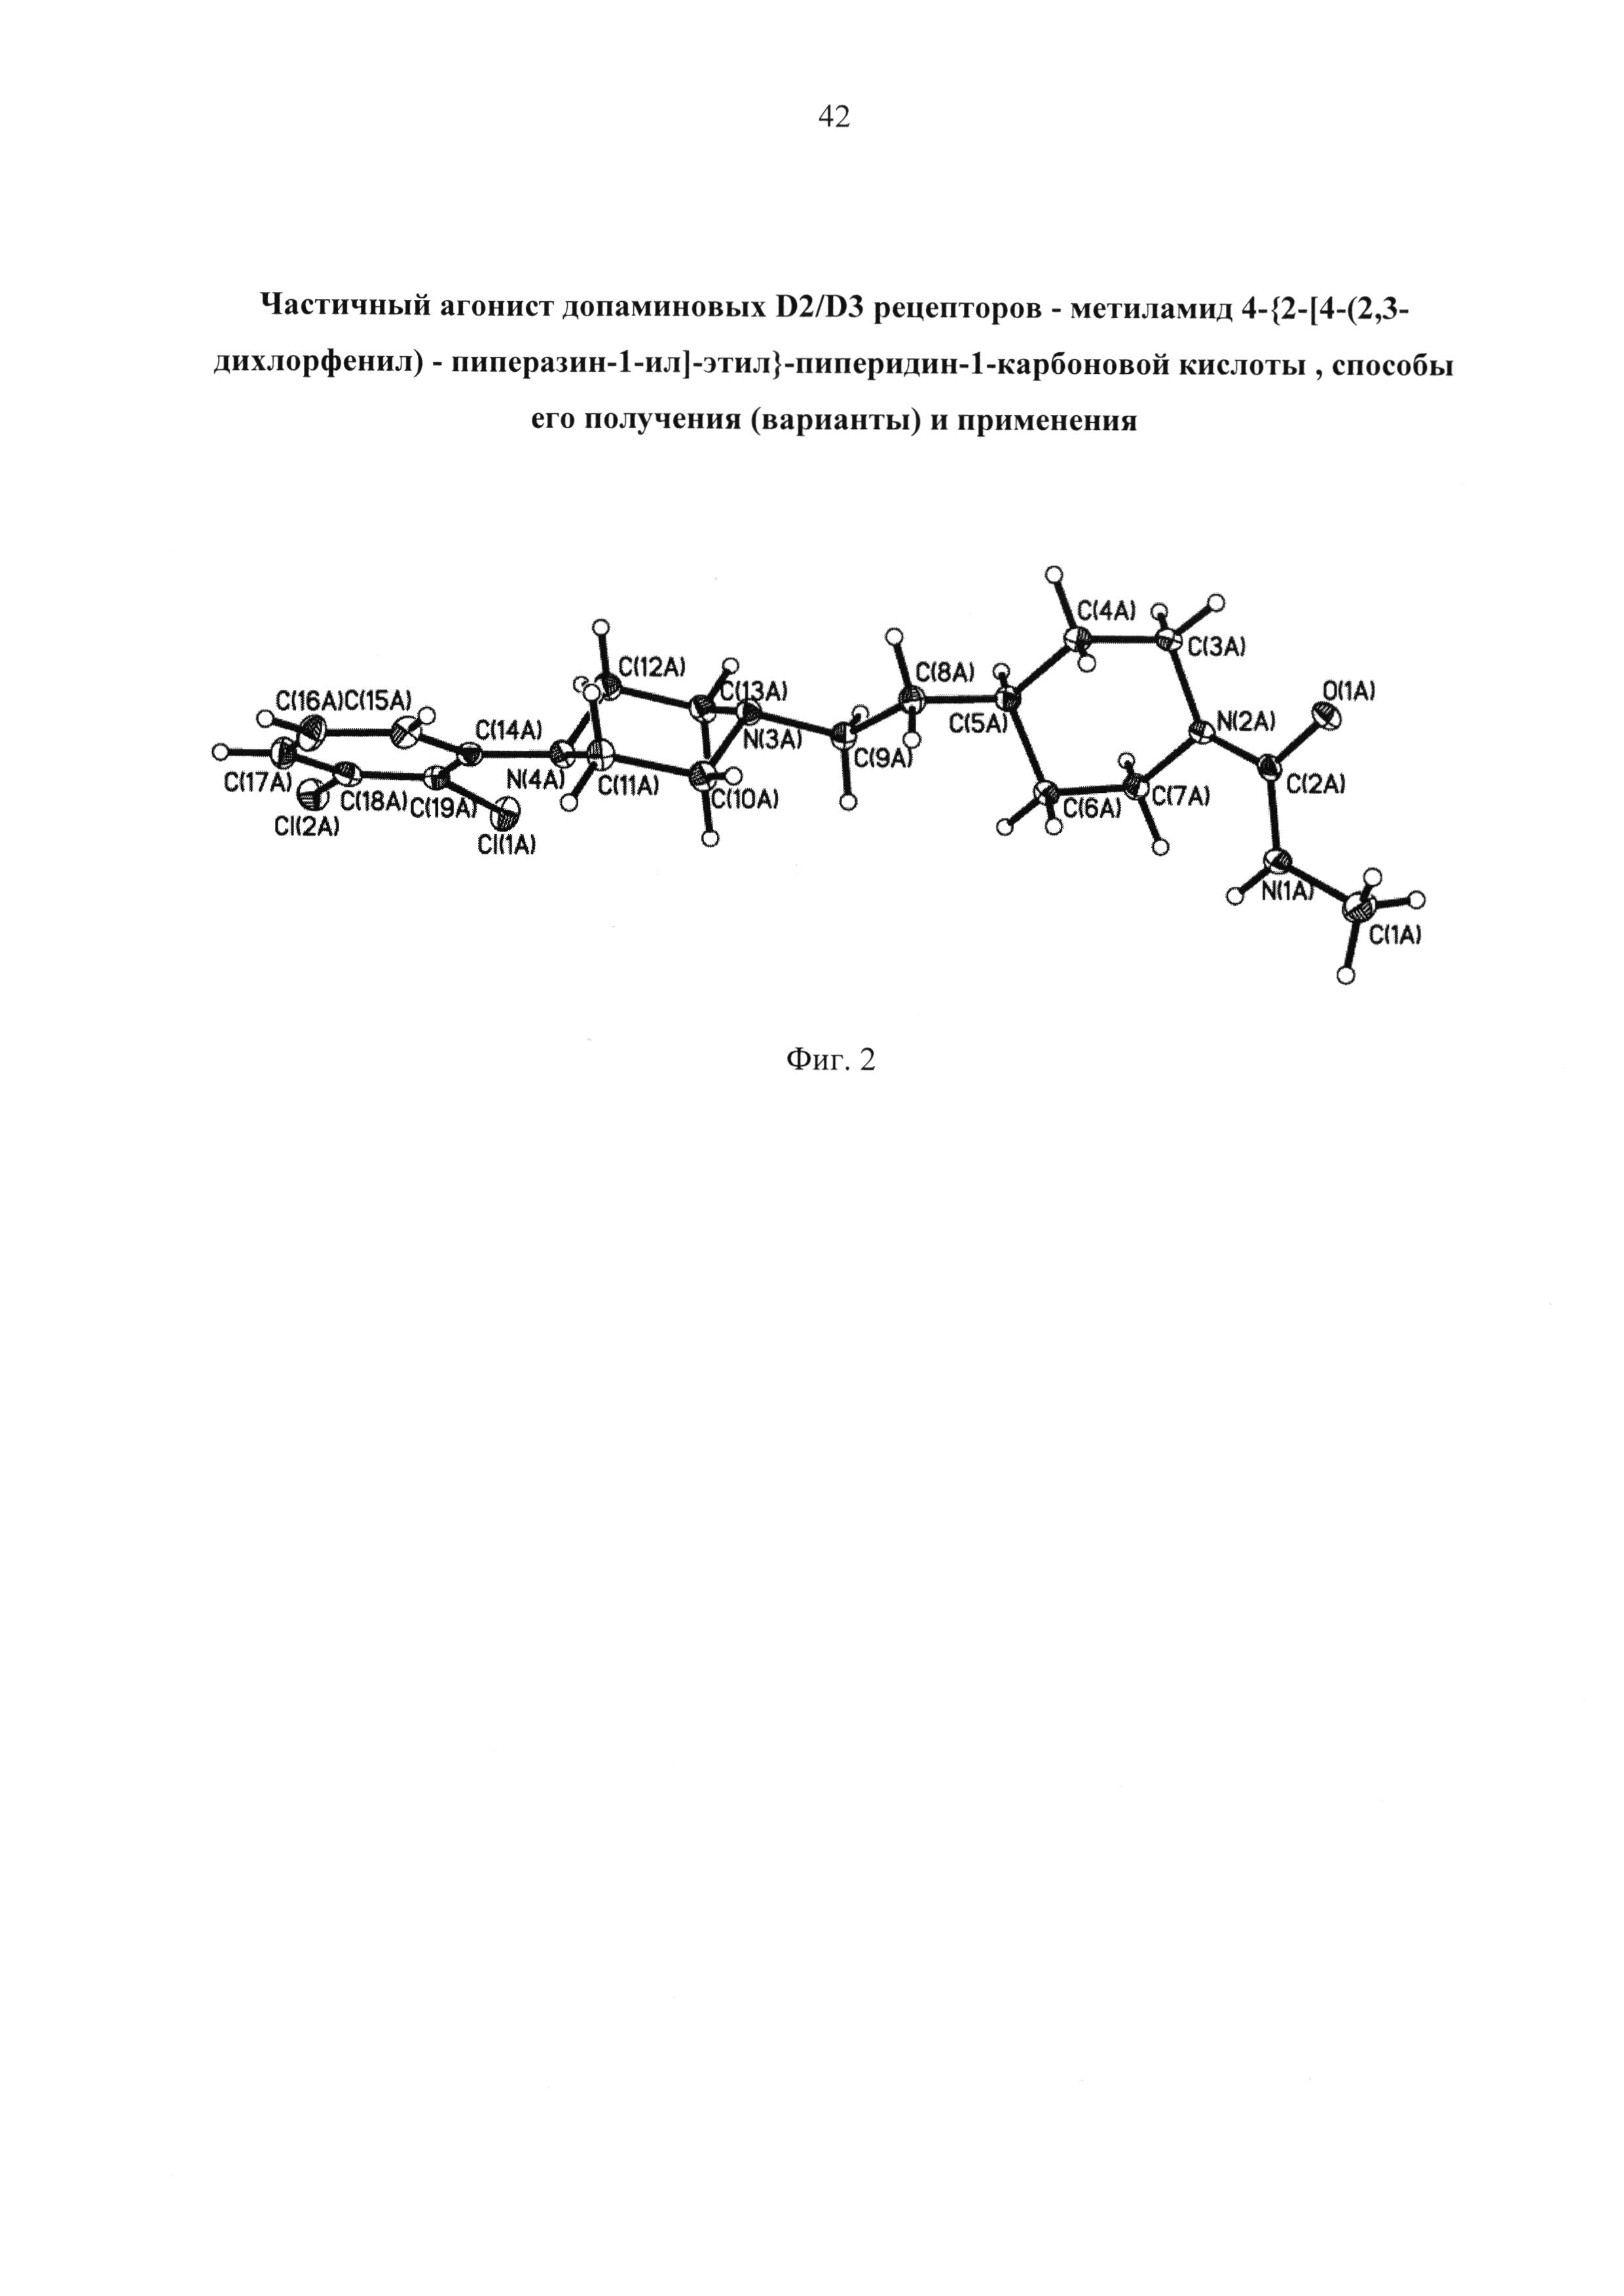 Частичный агонист допаминовых D2/D3 рецепторов - метиламид 4-{ 2-[4-(2,3-дихлорфенил)-пиперазин-1-ил]-этил} -пиперидин-1-карбоновой кислоты, способы его получения (варианты) и применения